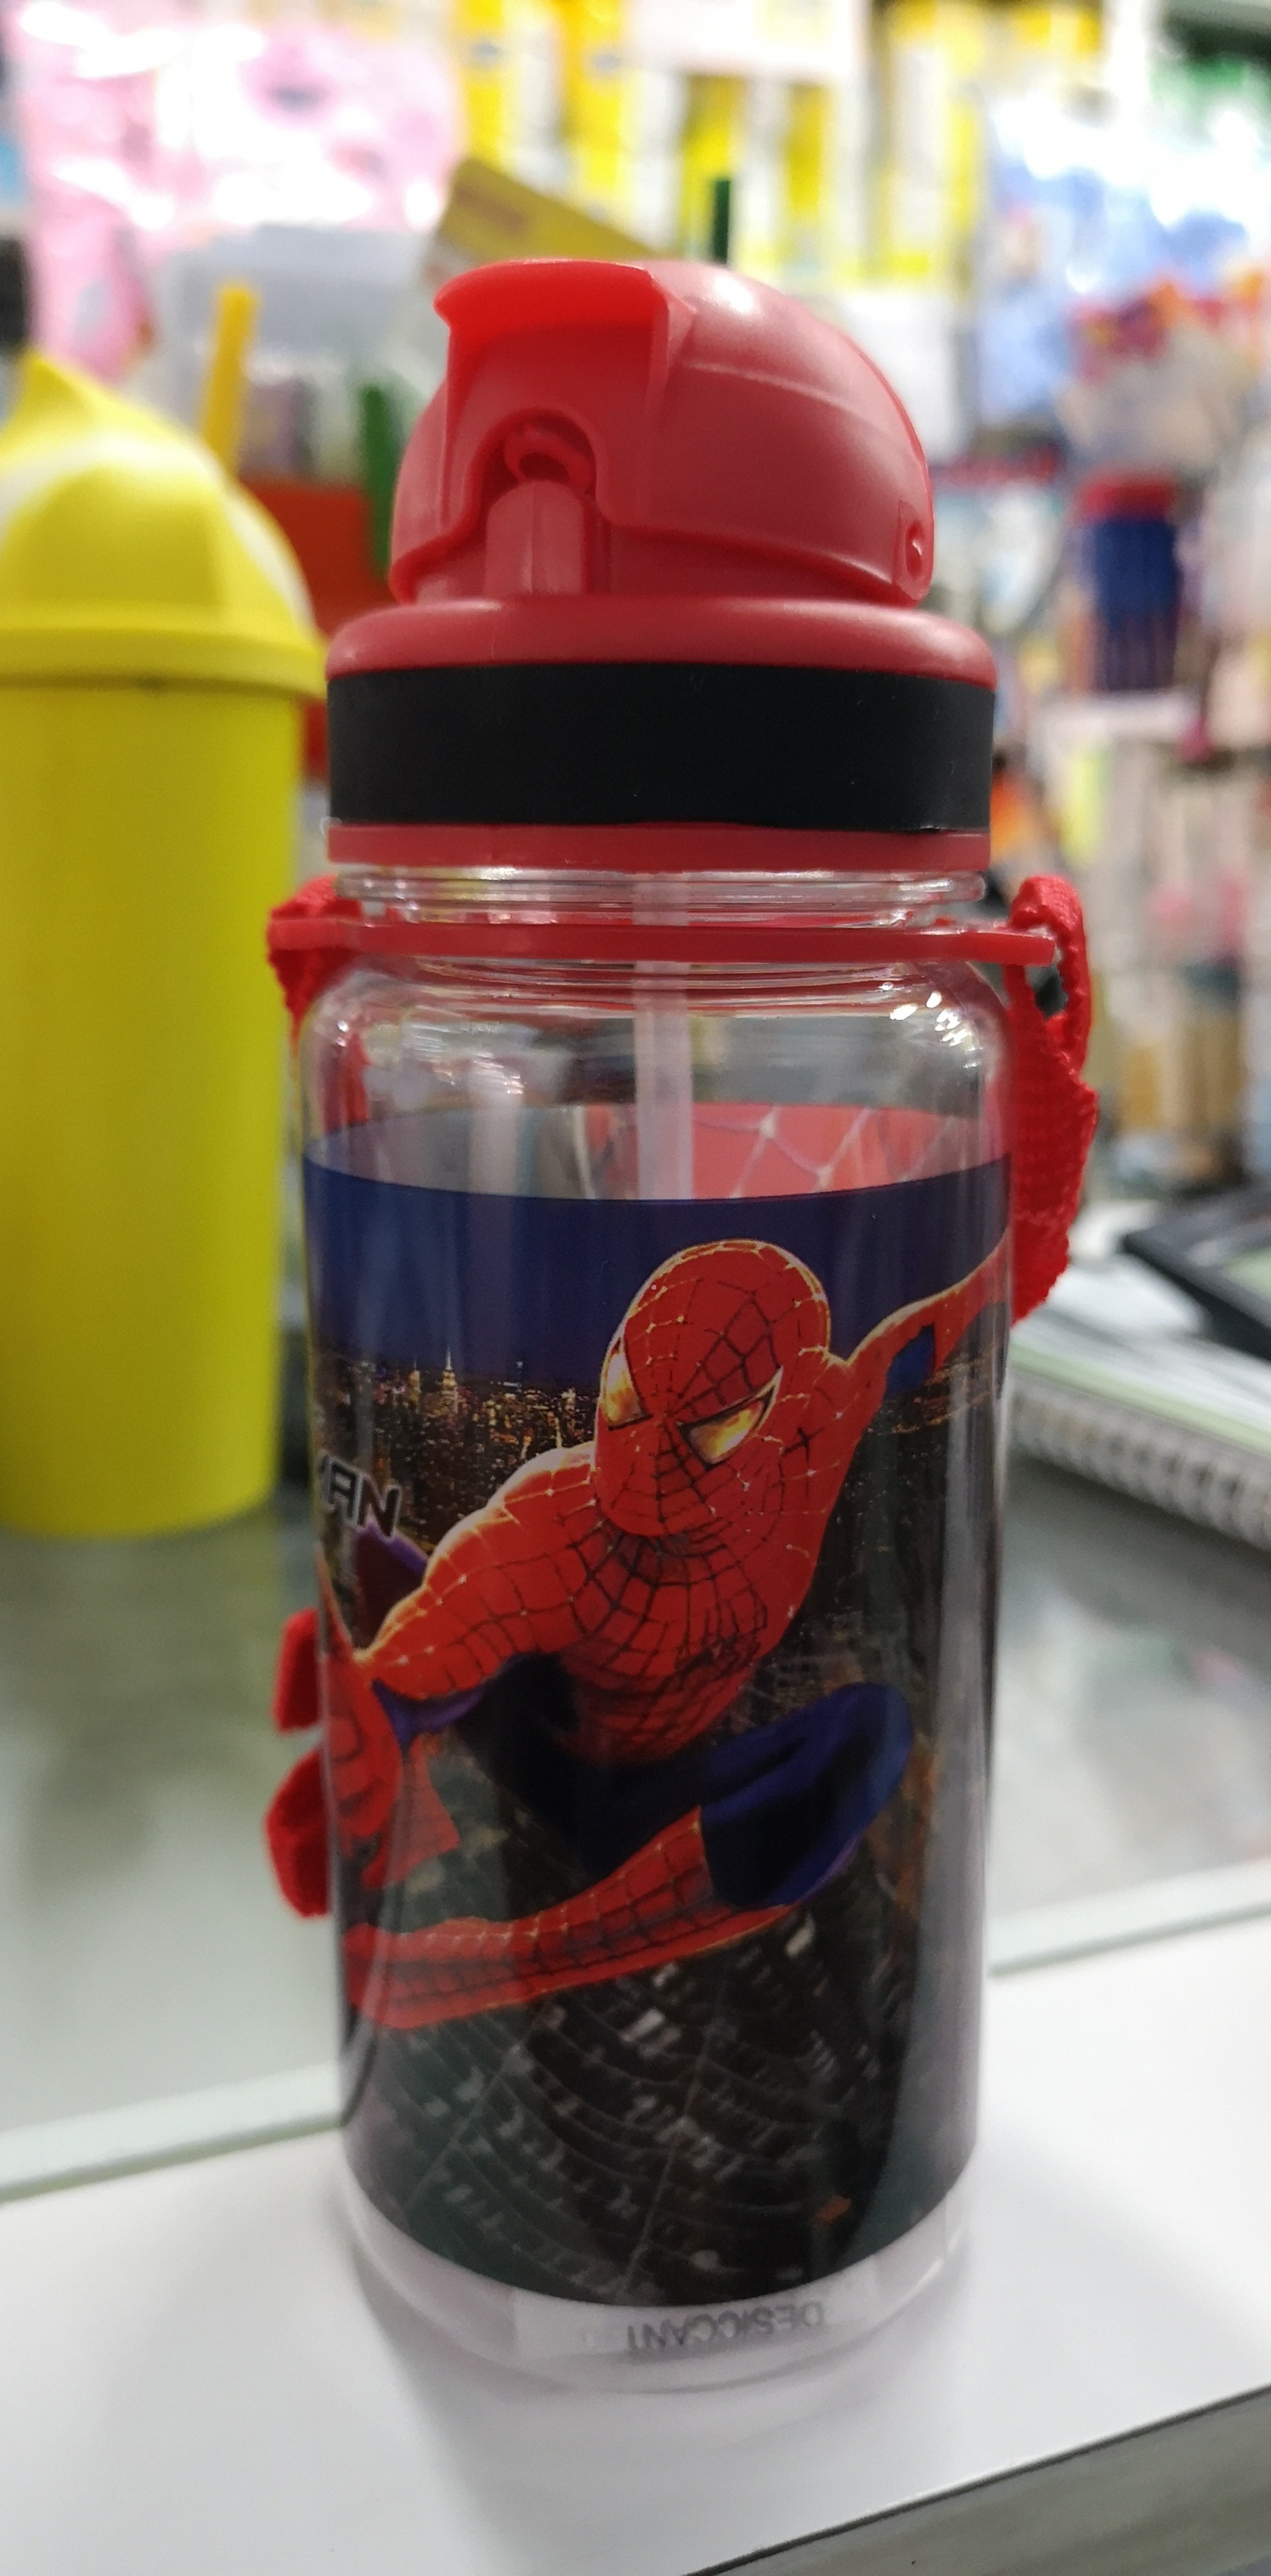 กระติกนำ้ลายการ์ตูน Spider Man    สีแดง